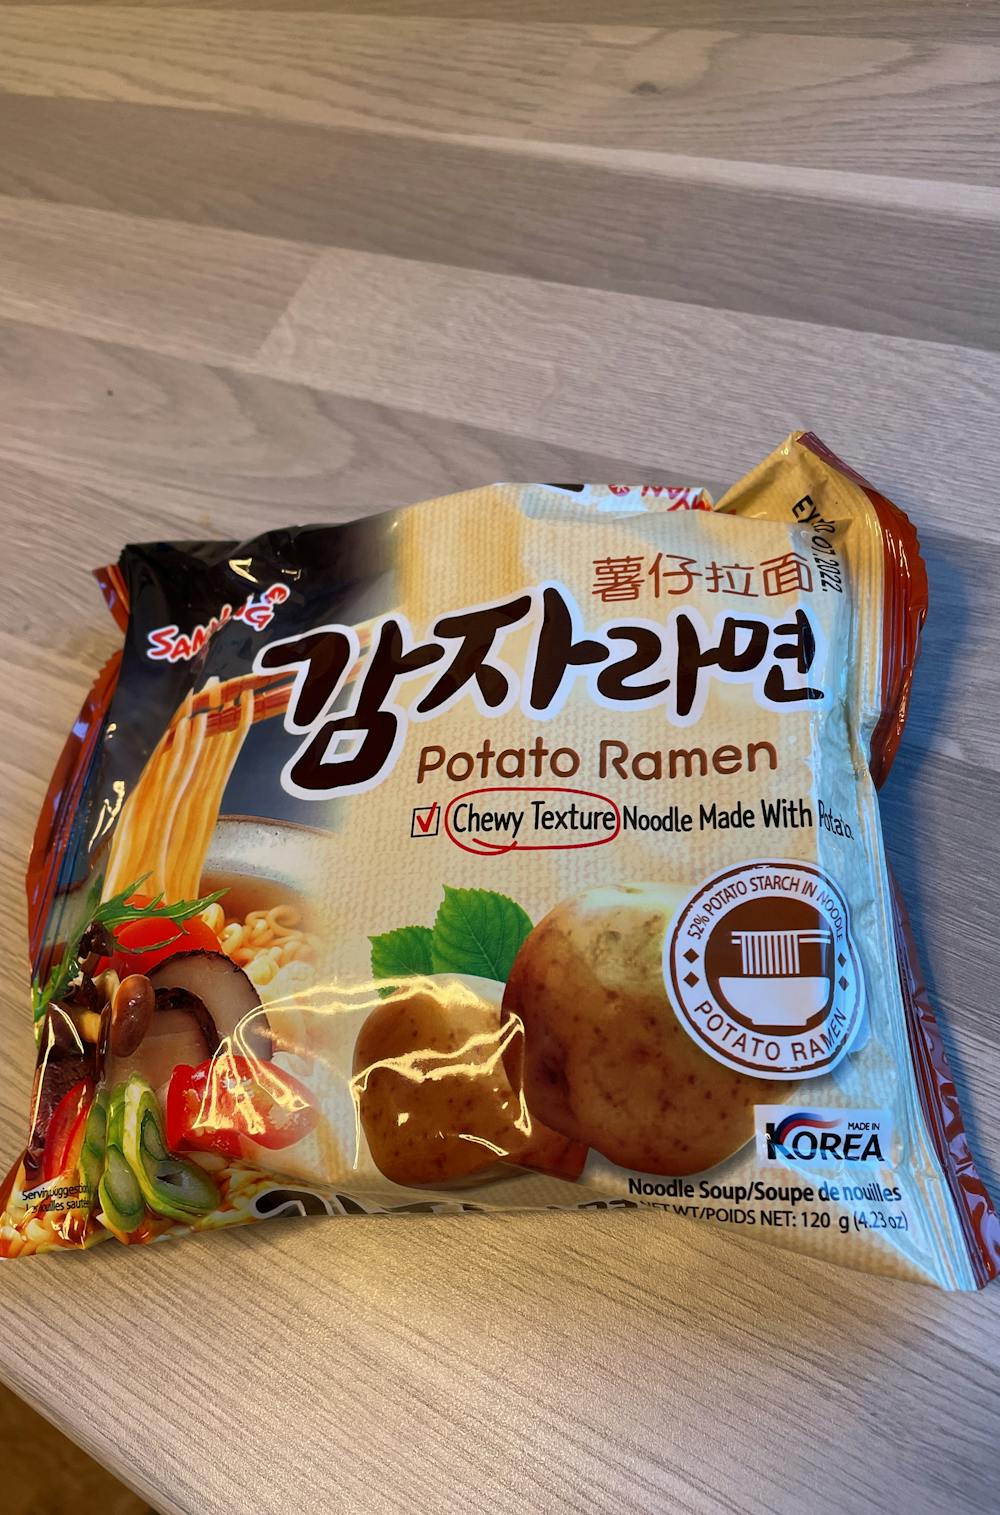 Potato Ramen, Samyang